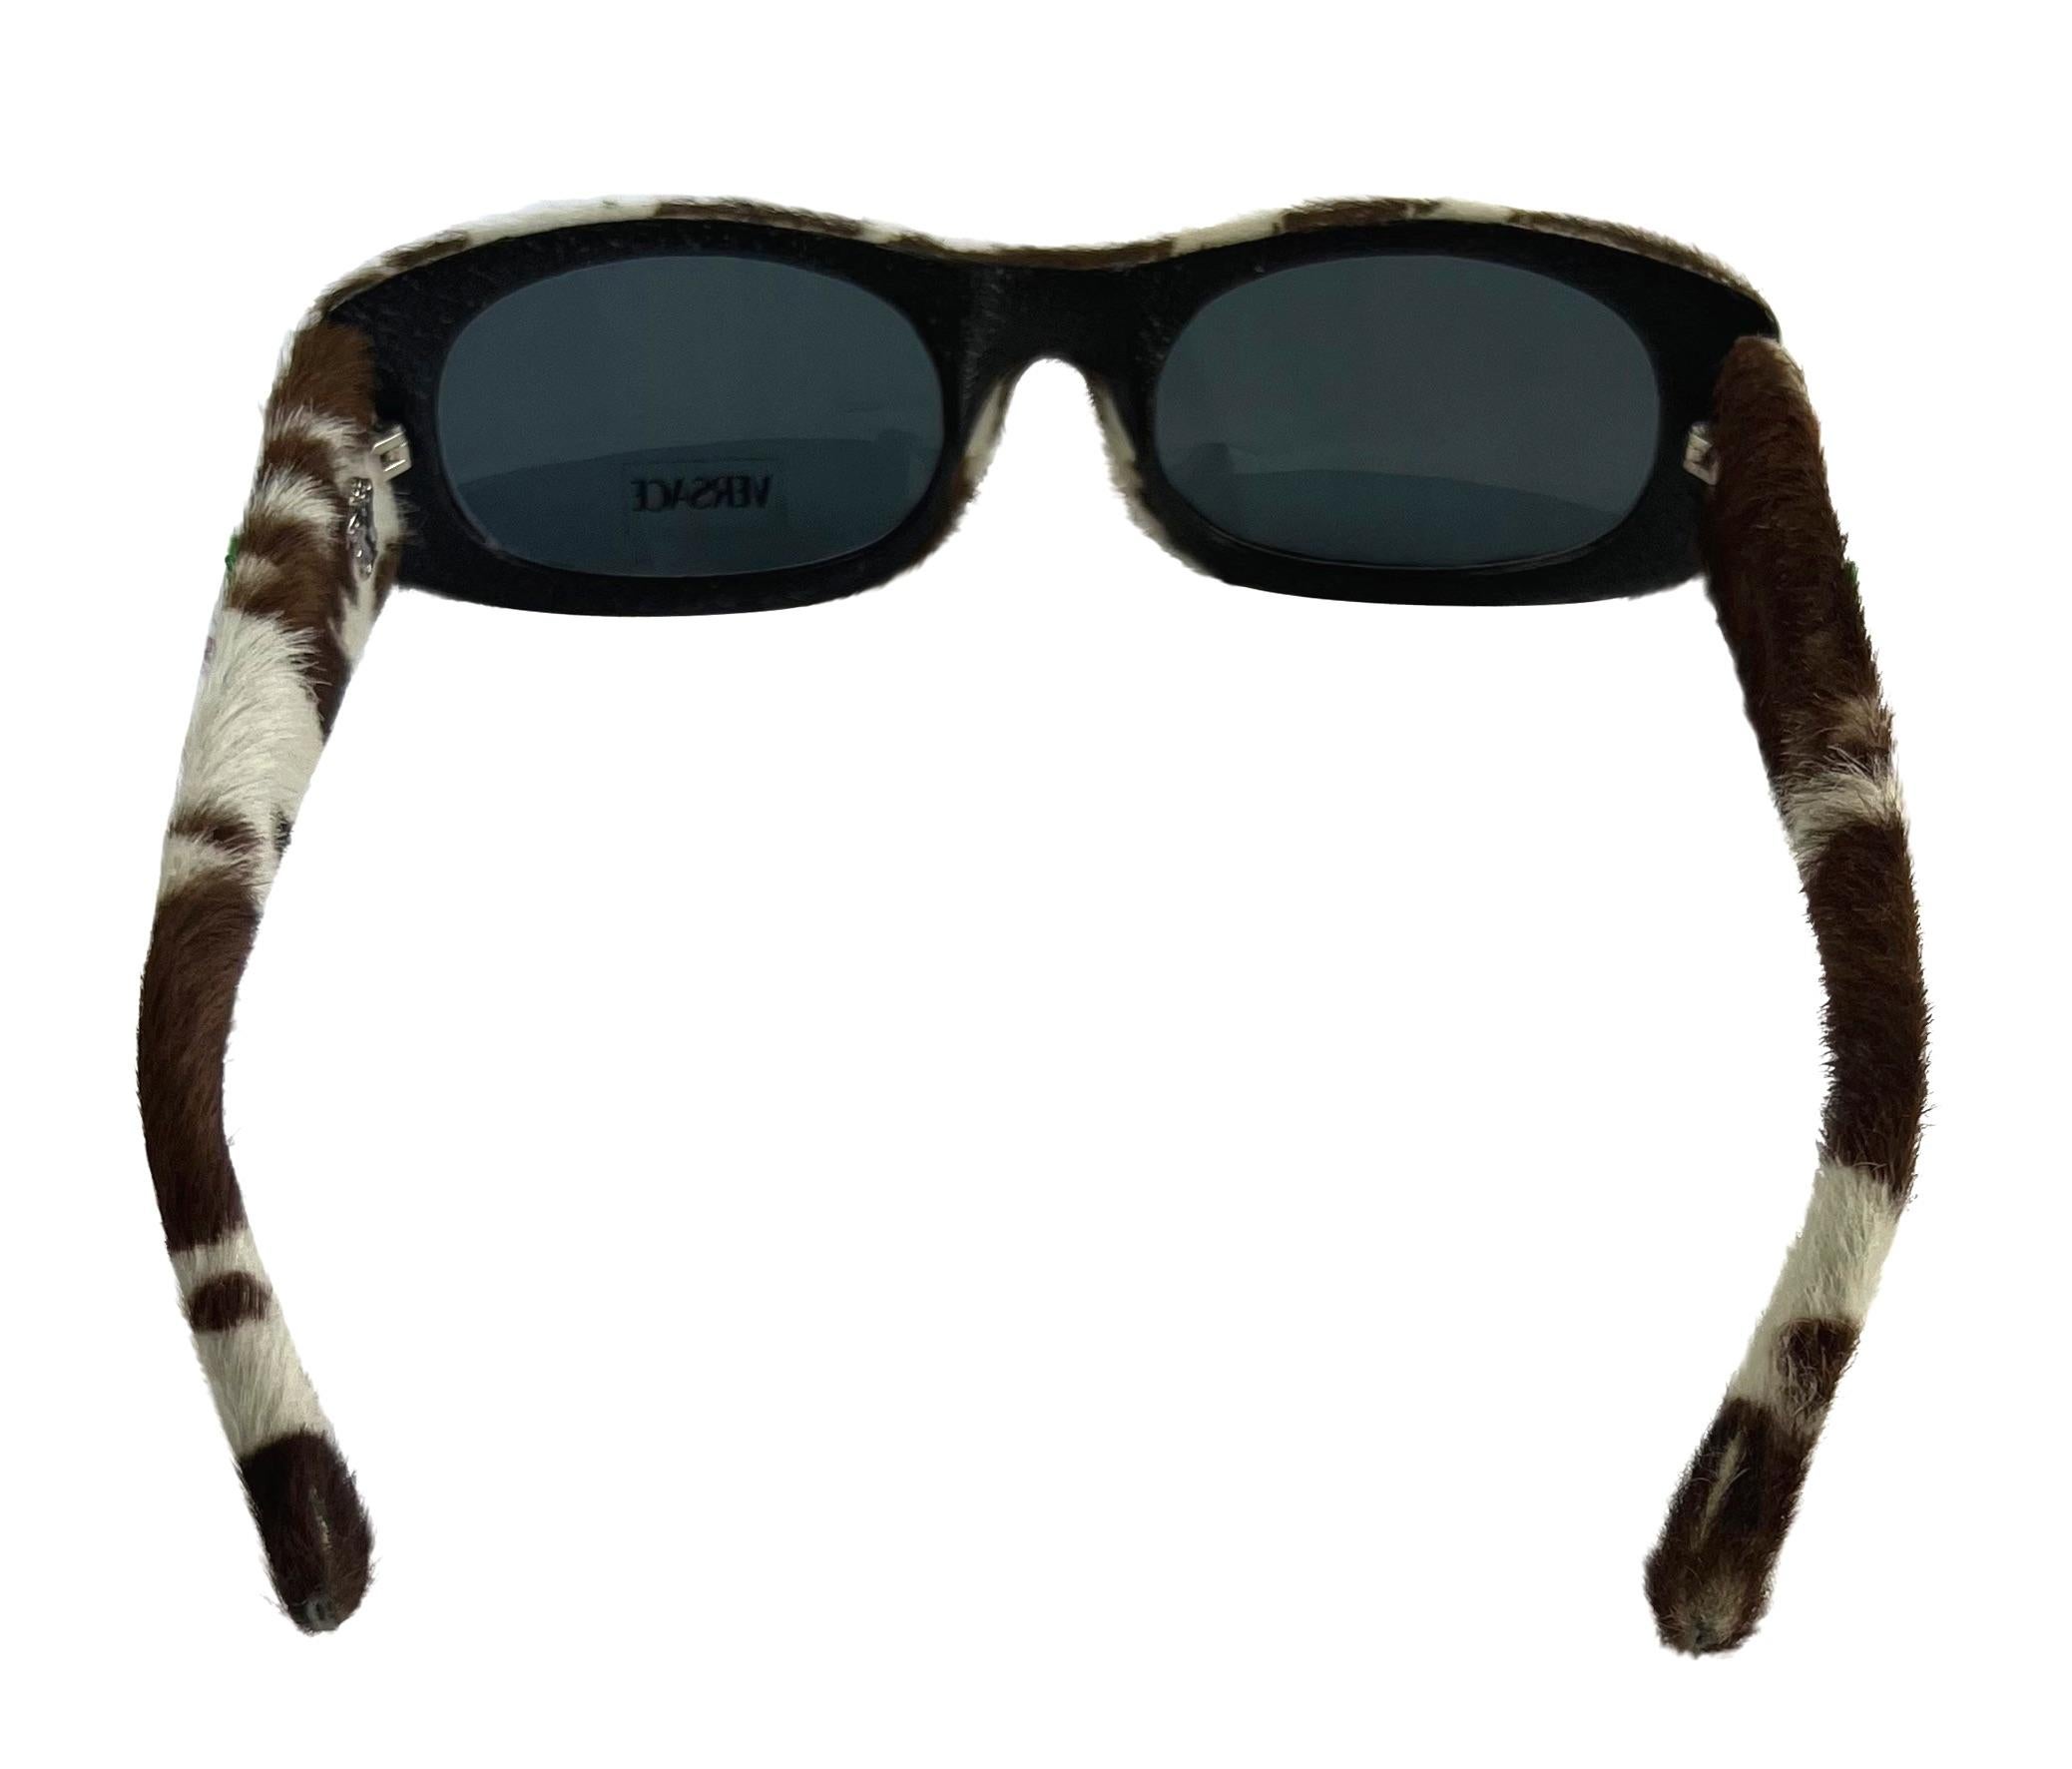 Voici une fabuleuse paire de lunettes de soleil Versace en poils de poney imprimés vache, conçue par Donatella Versace. Issues de la collection printemps-été 1999, ces lunettes de soleil sont recouvertes de poils de poney en pointillés et présentent